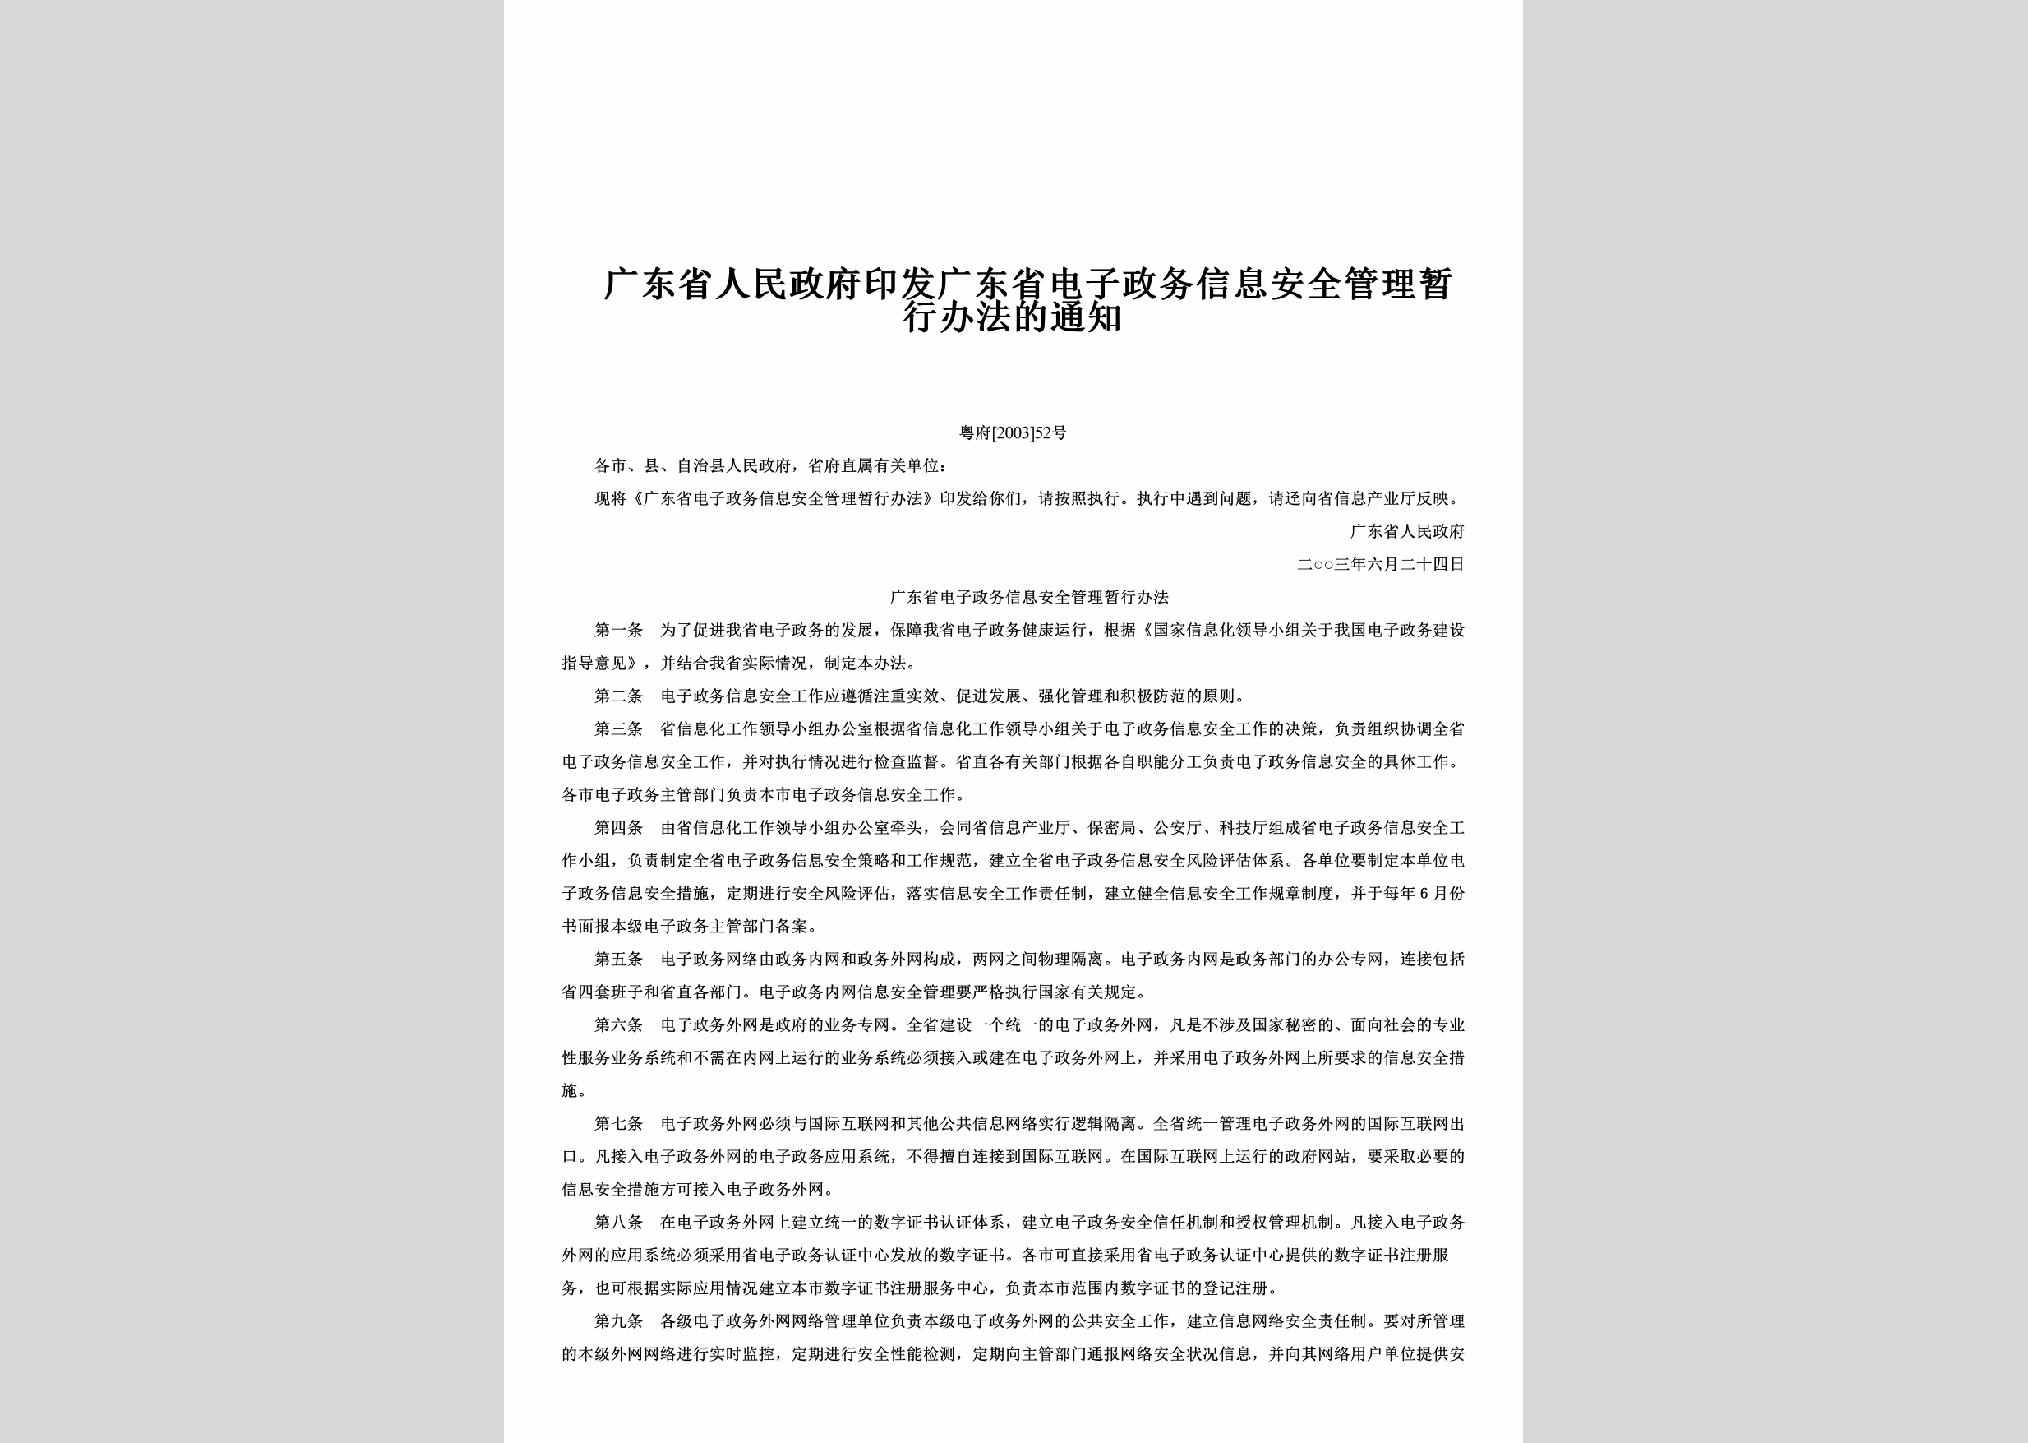 粤府[2003]52号：印发广东省电子政务信息安全管理暂行办法的通知